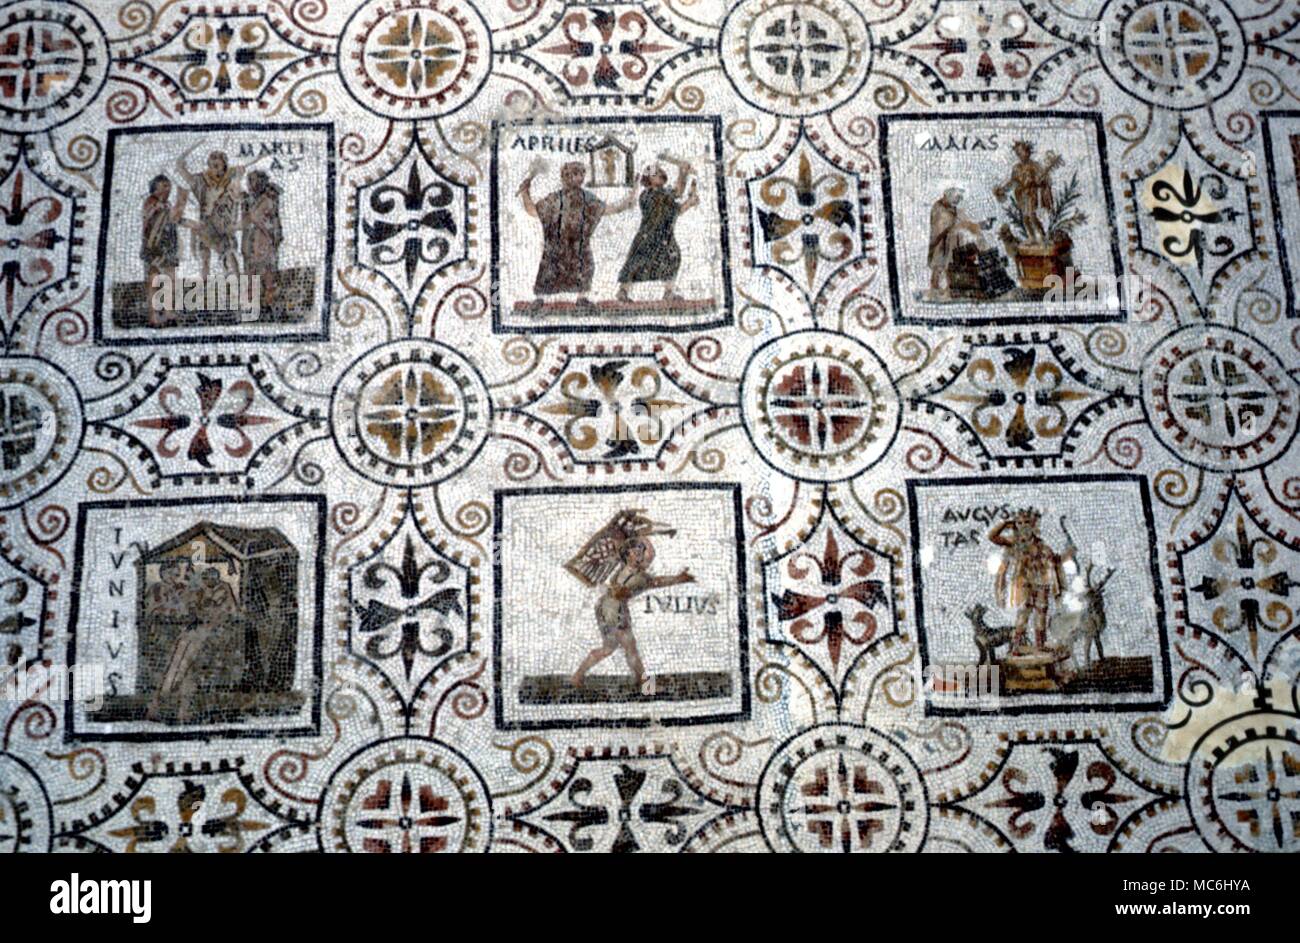 Jahreszeiten Mosaik der Monate aus der Römischen Zeit (ca. 3.Jh. N.CHR.) jetzt im Museum von Sousse Tunesien Stockfoto